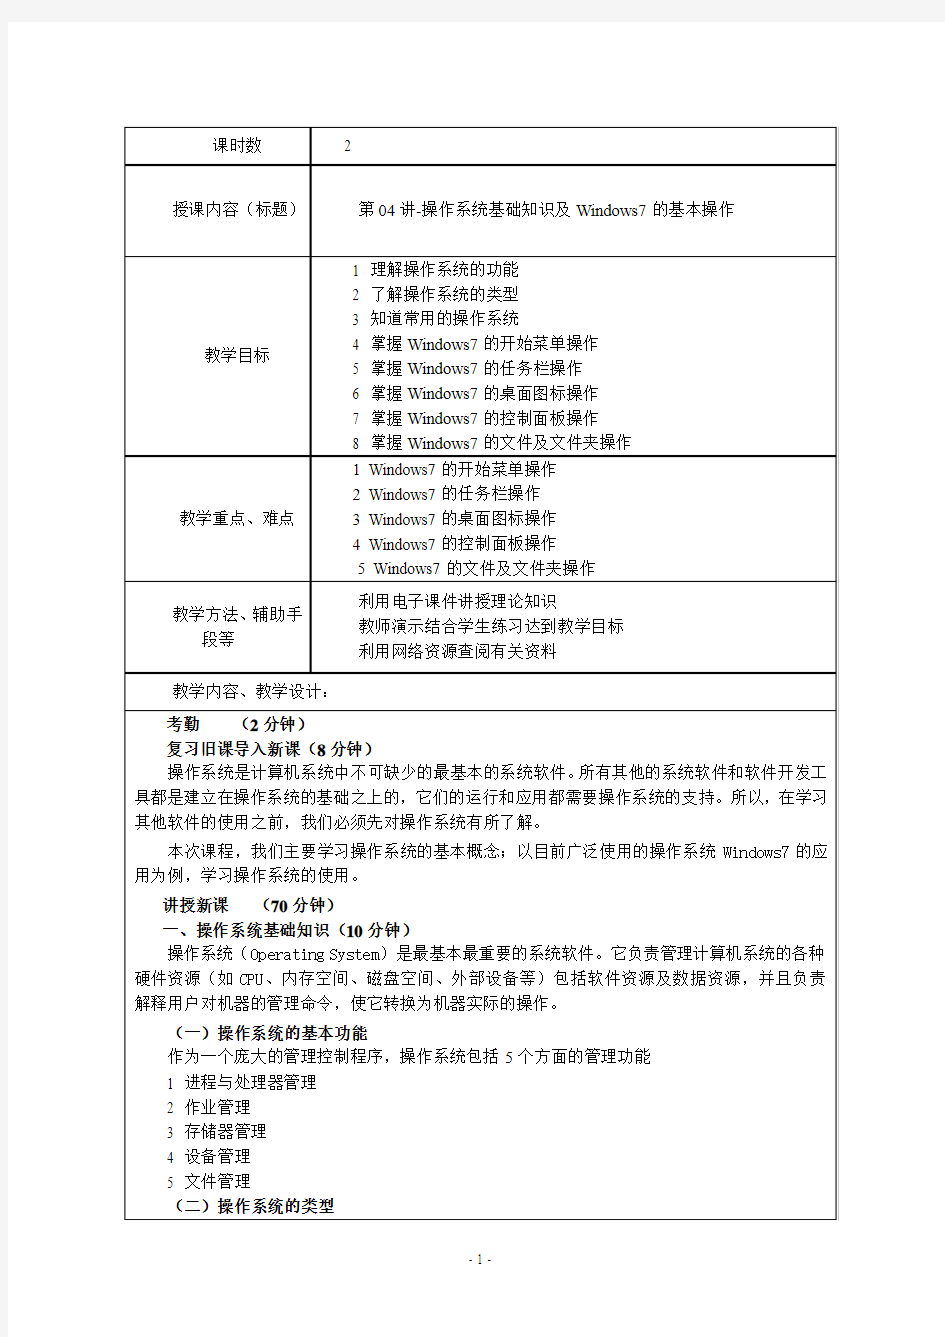 浙江高校计算机文化基础第04讲操作系统基础知识及Windows7基本操作